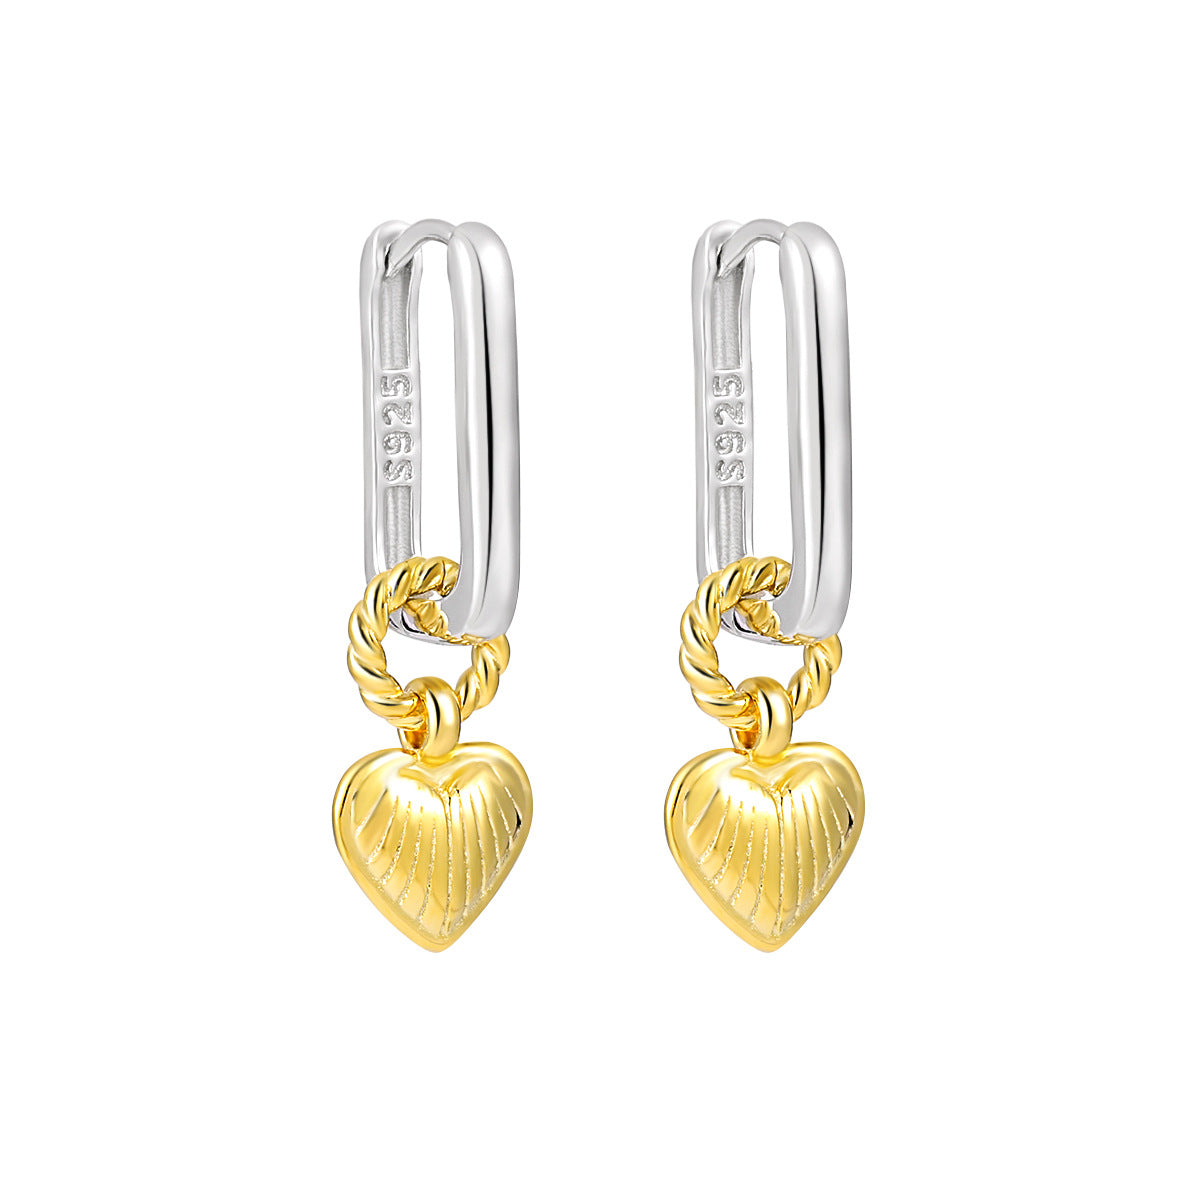 Hot Sale Twisted Heart 925 Sterling Silver Leverback Dangling Earrings